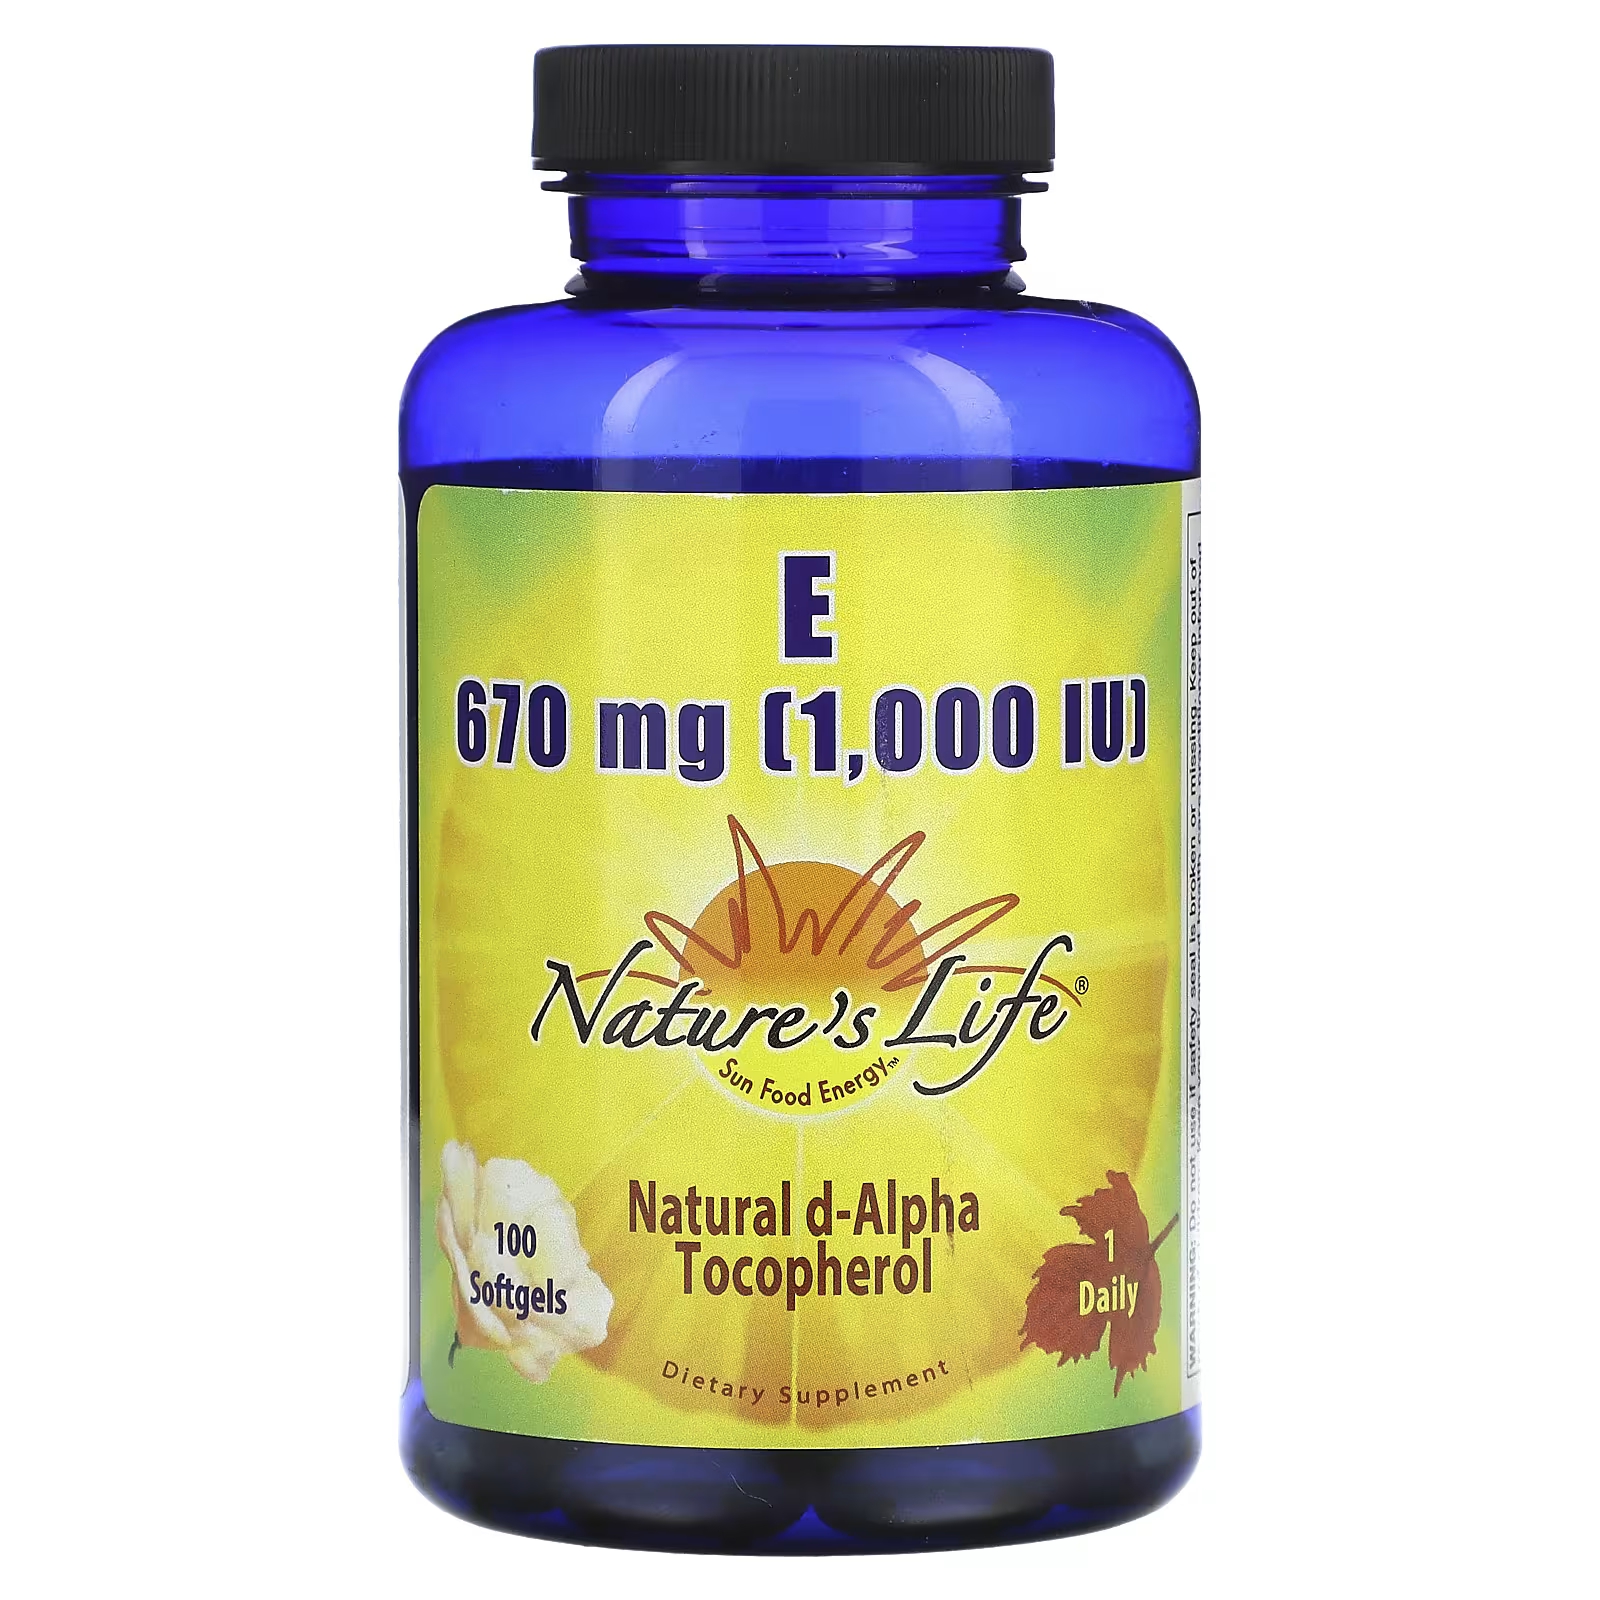 Nature's Life Витамин Е 670 мг (1000 МЕ), 100 мягких таблеток solaray витамин е из природного источника высокая эффективность 670 мг 60 мягких таблеток